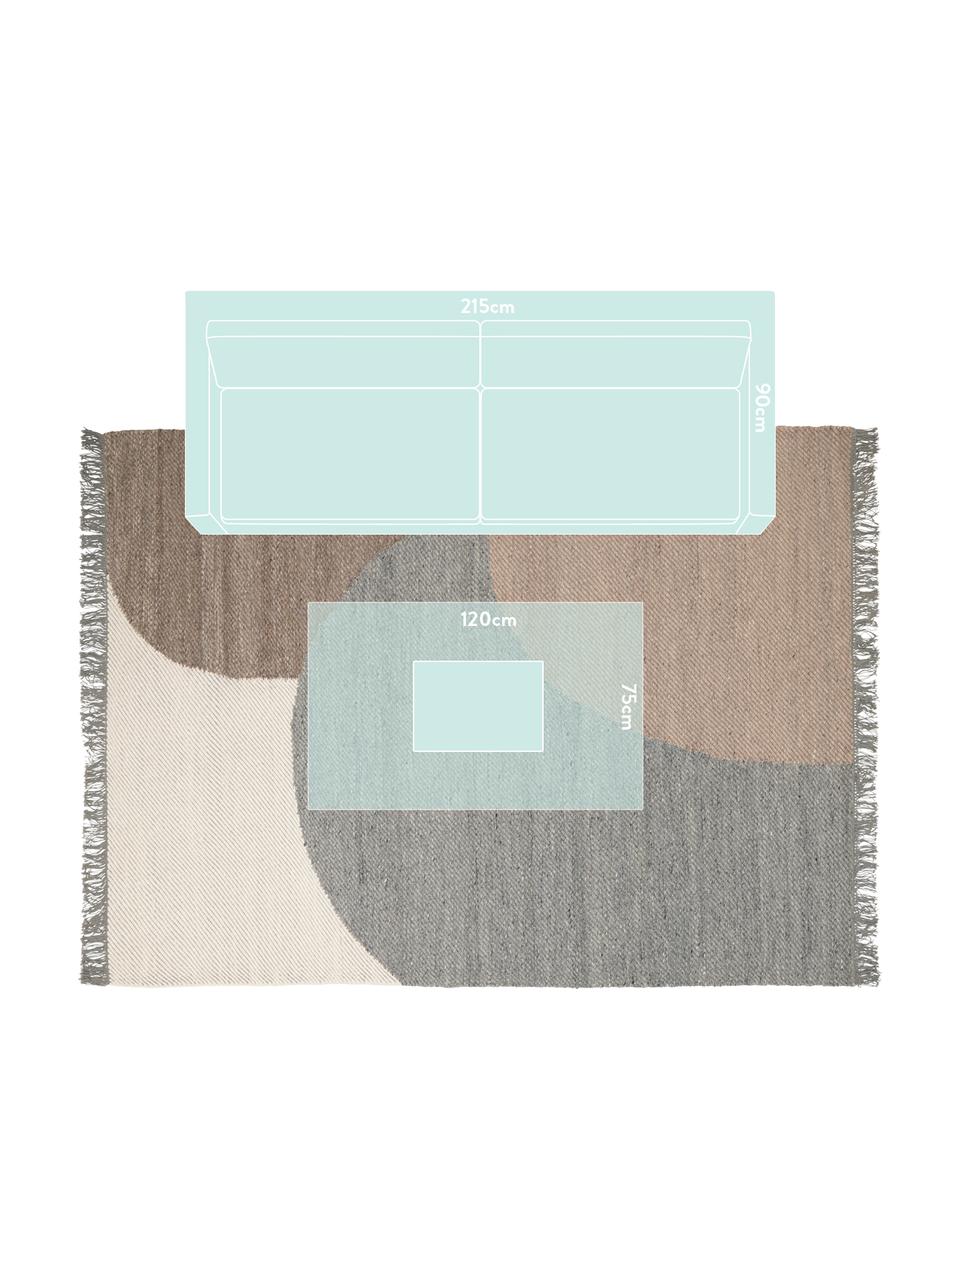 Tappeto in lana tessuto a mano con motivo geometrico Eik, Frange: 100% cotone Nel caso dei , Tonalità grigie e beige, Larg. 200 x Lung. 300 cm (taglia L)